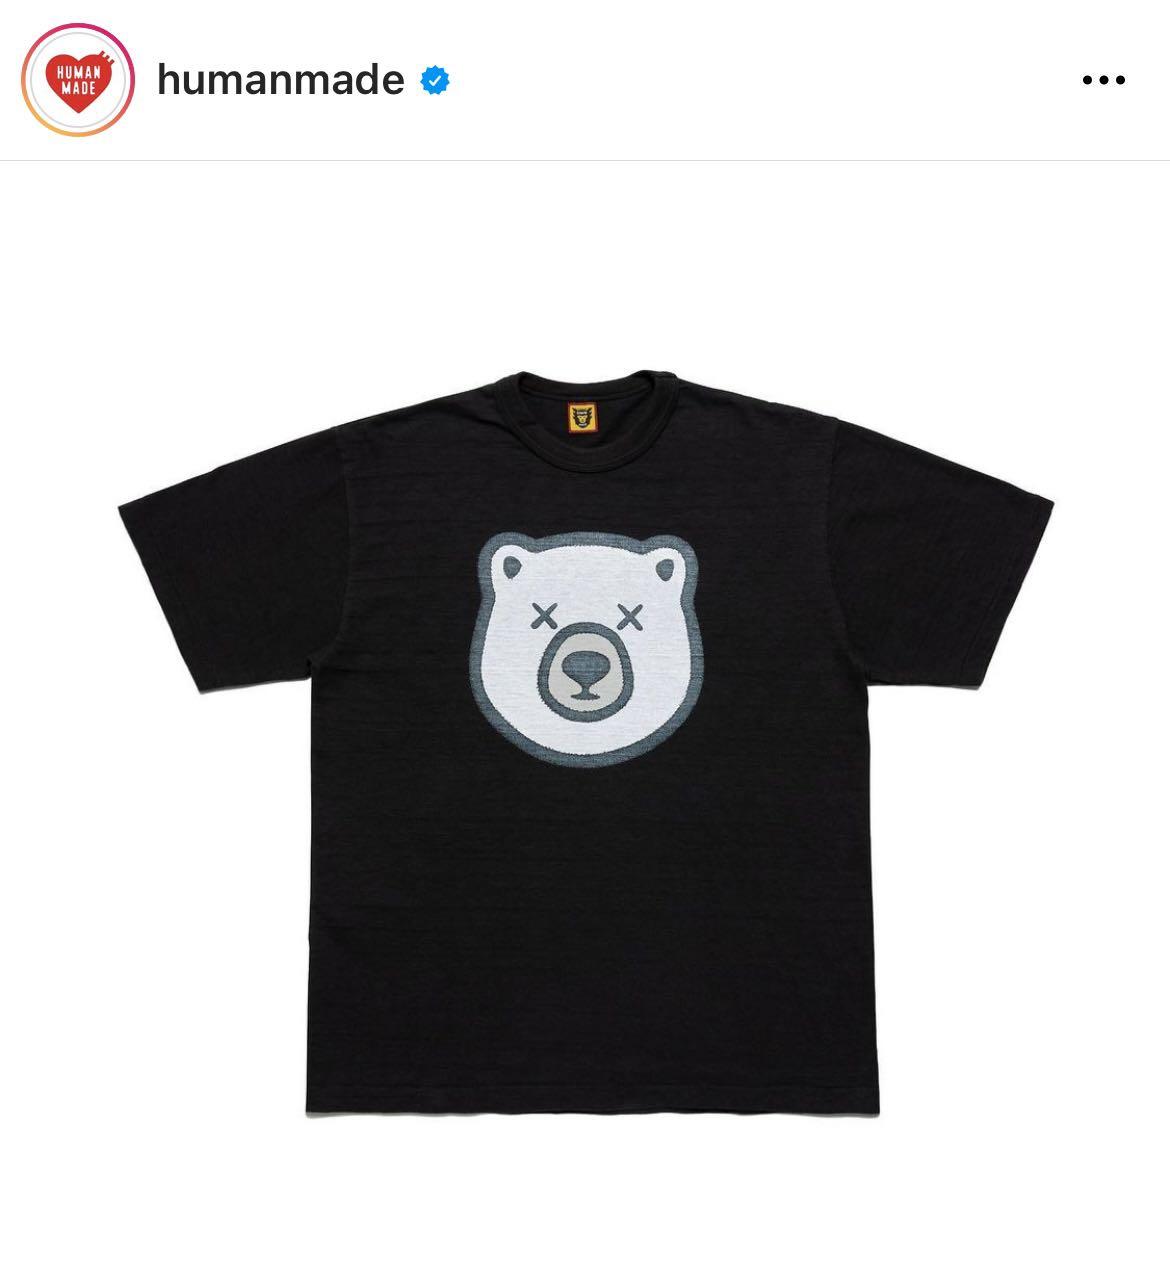 Kaws x Human made #5, 男裝, 上身及套裝, T-shirt、恤衫、有領衫